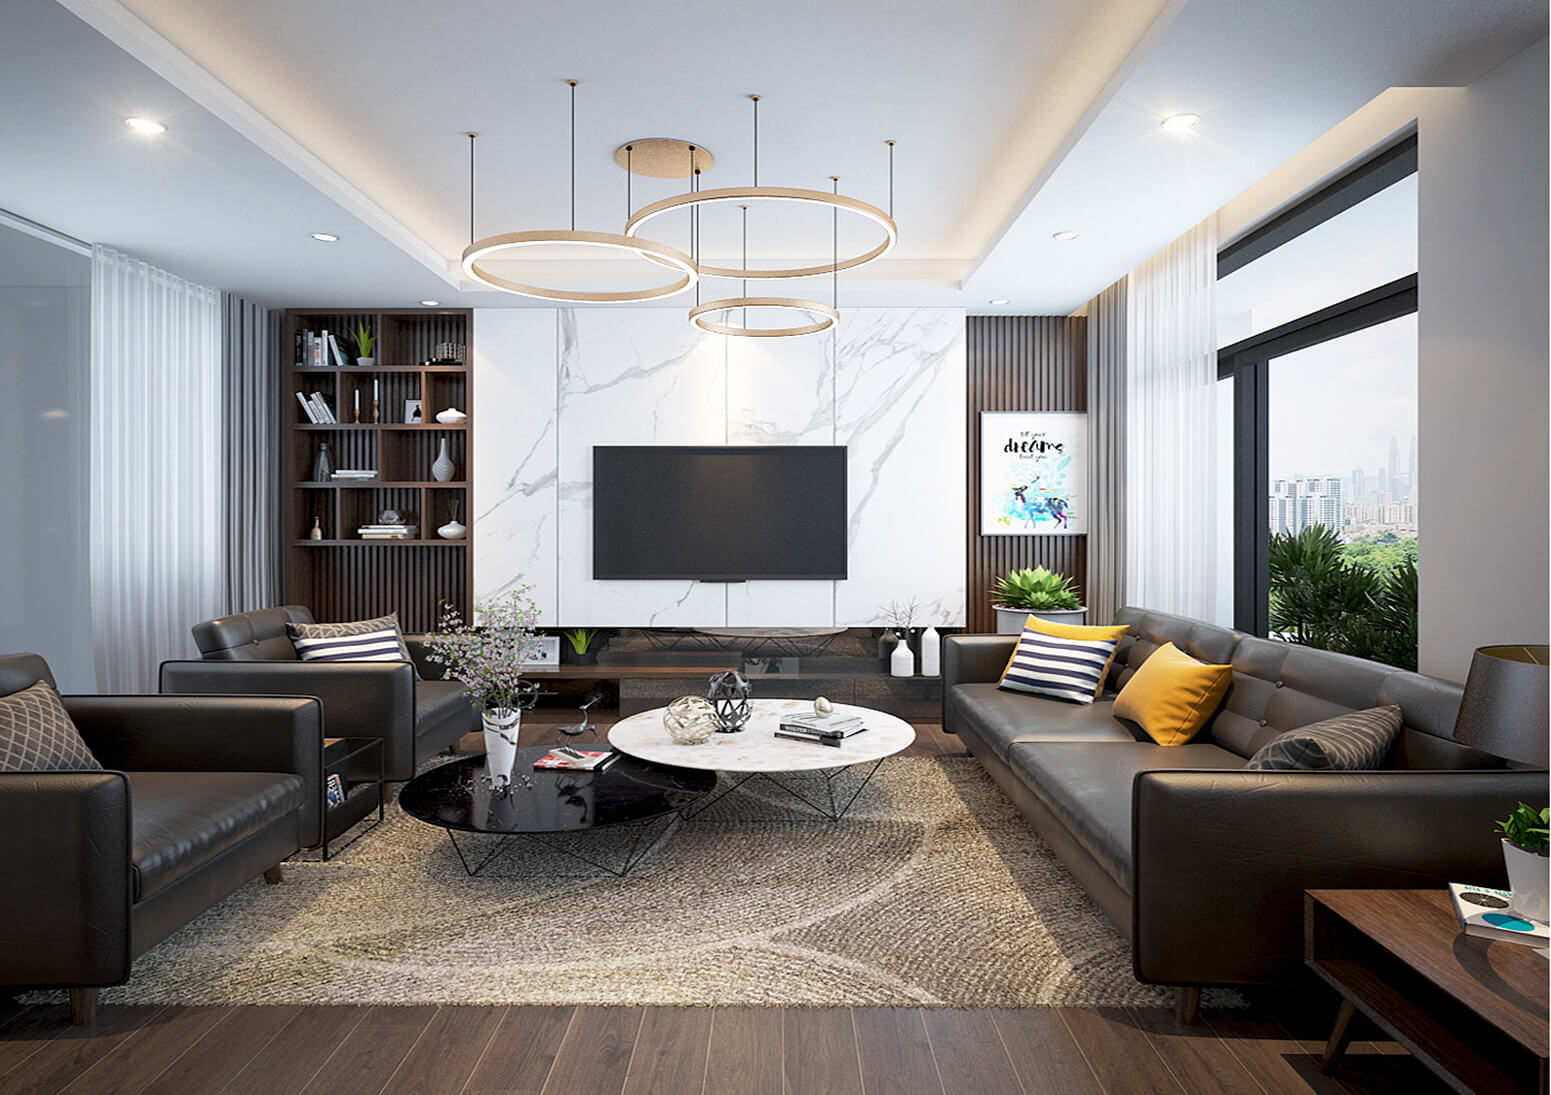 Hình ảnh: Nội thất phòng khách hiện đại được thiết kế tối giản với tone màu tương phản chủ đạo